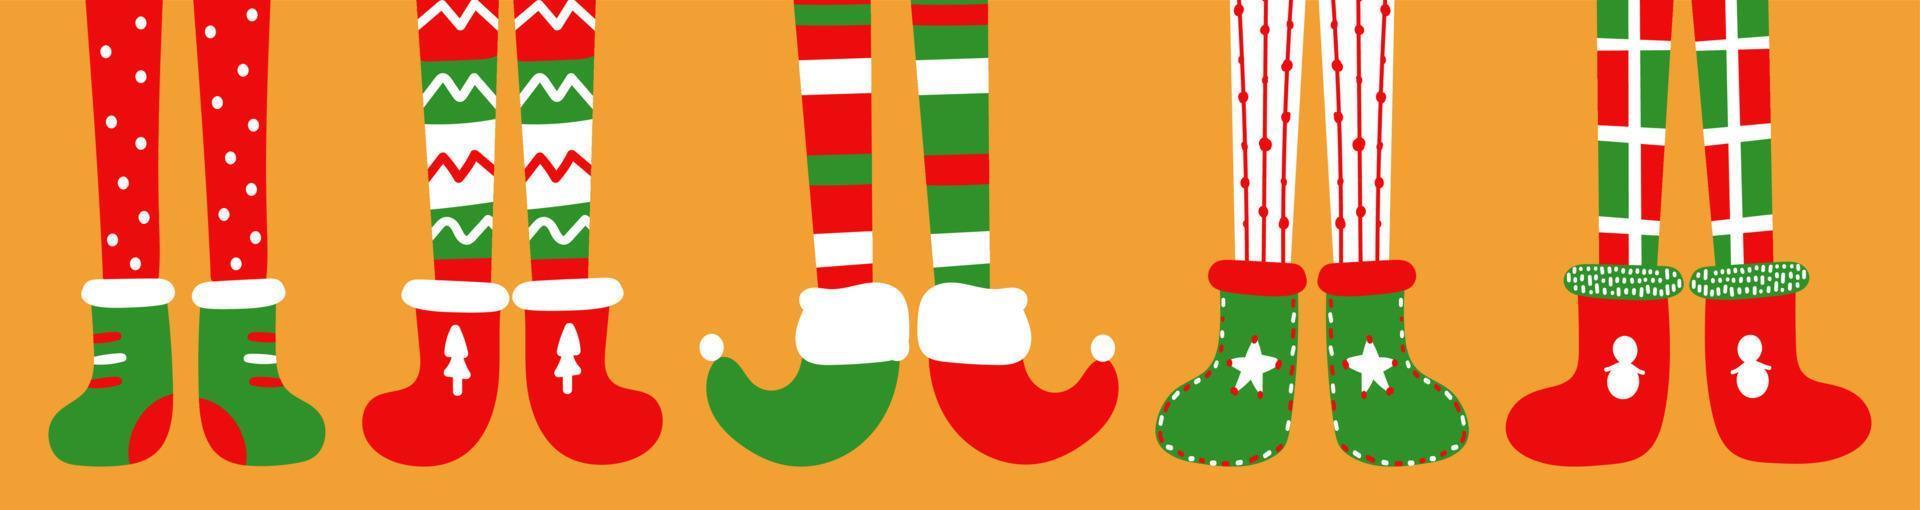 i piedi dei bambini in simpatici calzini e stivali di feltro. bambini in costumi di elfi di natale. festa a tema. colori tradizionali delle feste. illustrazione vettoriale modificabile, disegnata a mano